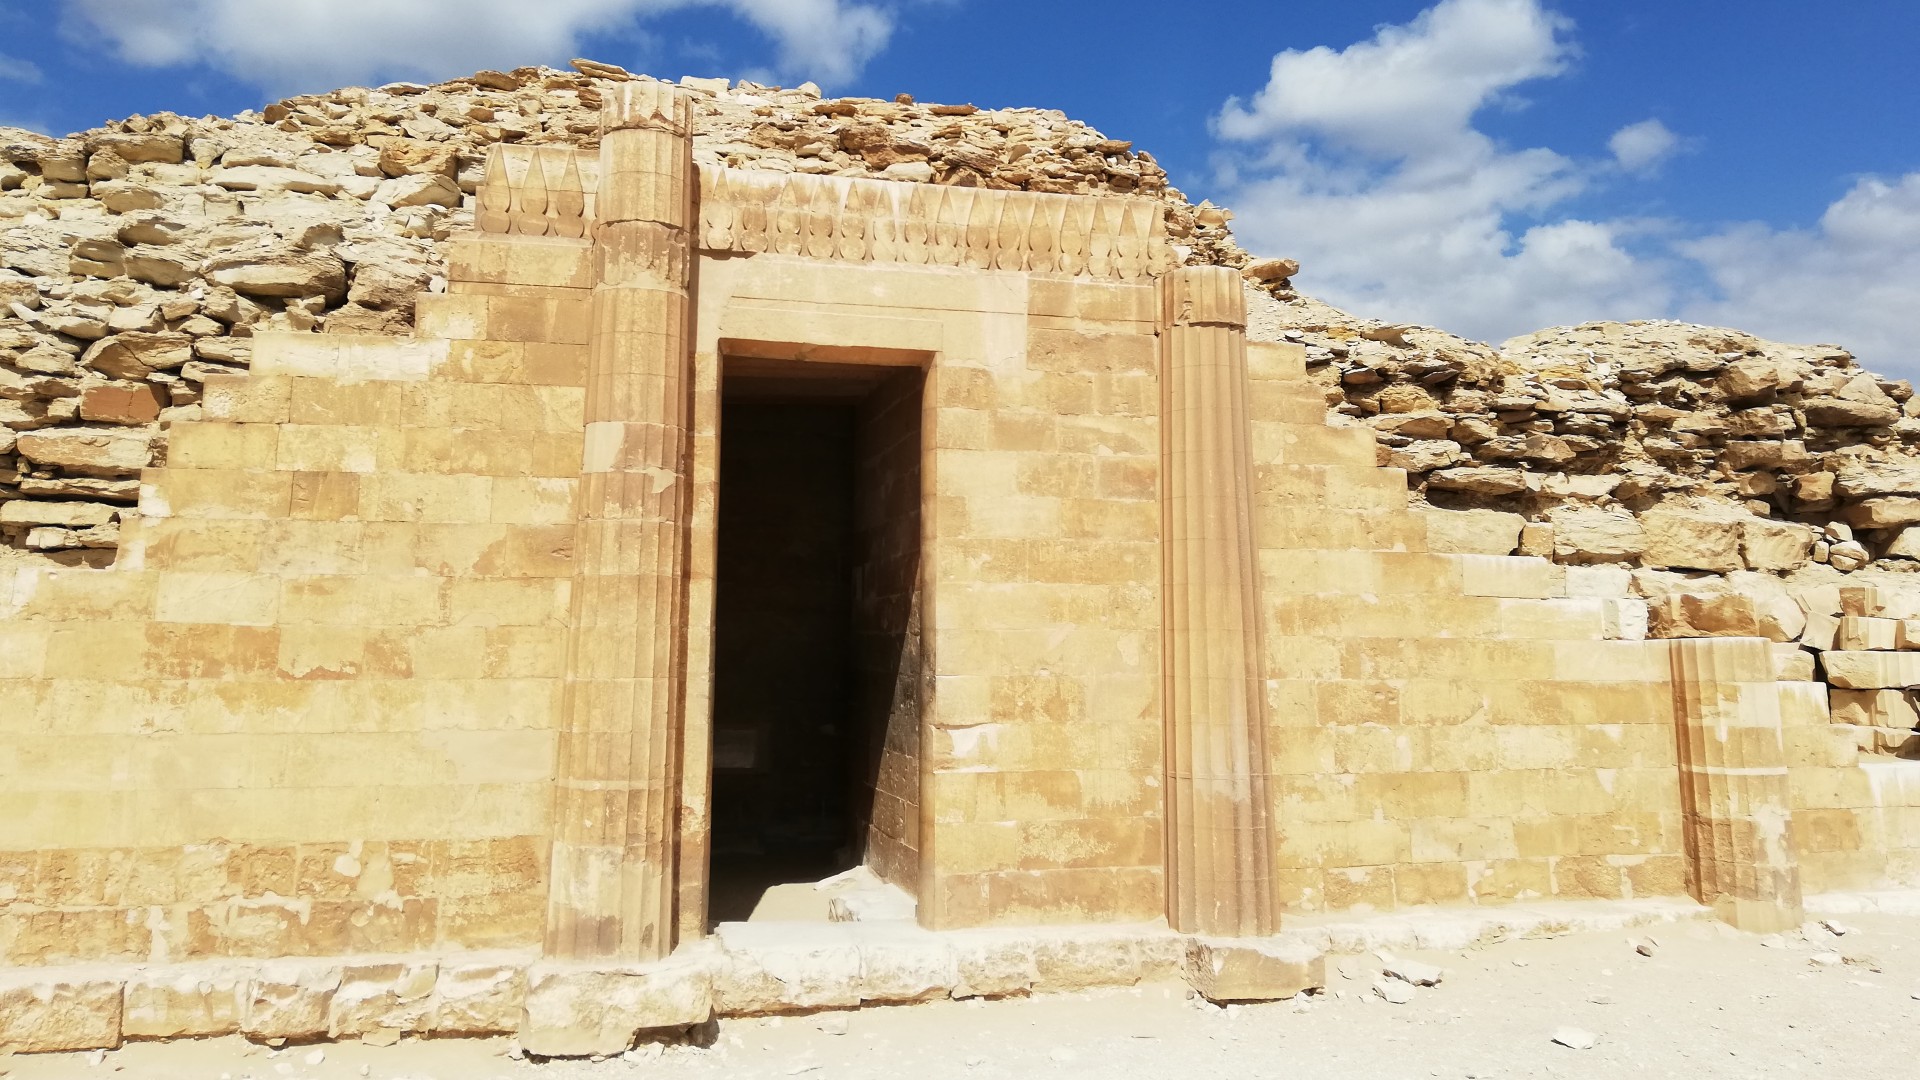 Hier sehen wir den Pavillon im Grabkomplex des Pharaos Djoser in Sakkara, Ägypten.  Wir können eine Tür sehen, die von 2 hohen Säulen flankiert wird.  Während es hauptsächlich glatte Ziegel gibt, sahen die Ziegel oben eher willkürlich und weniger ordentlich aufgestapelt aus.